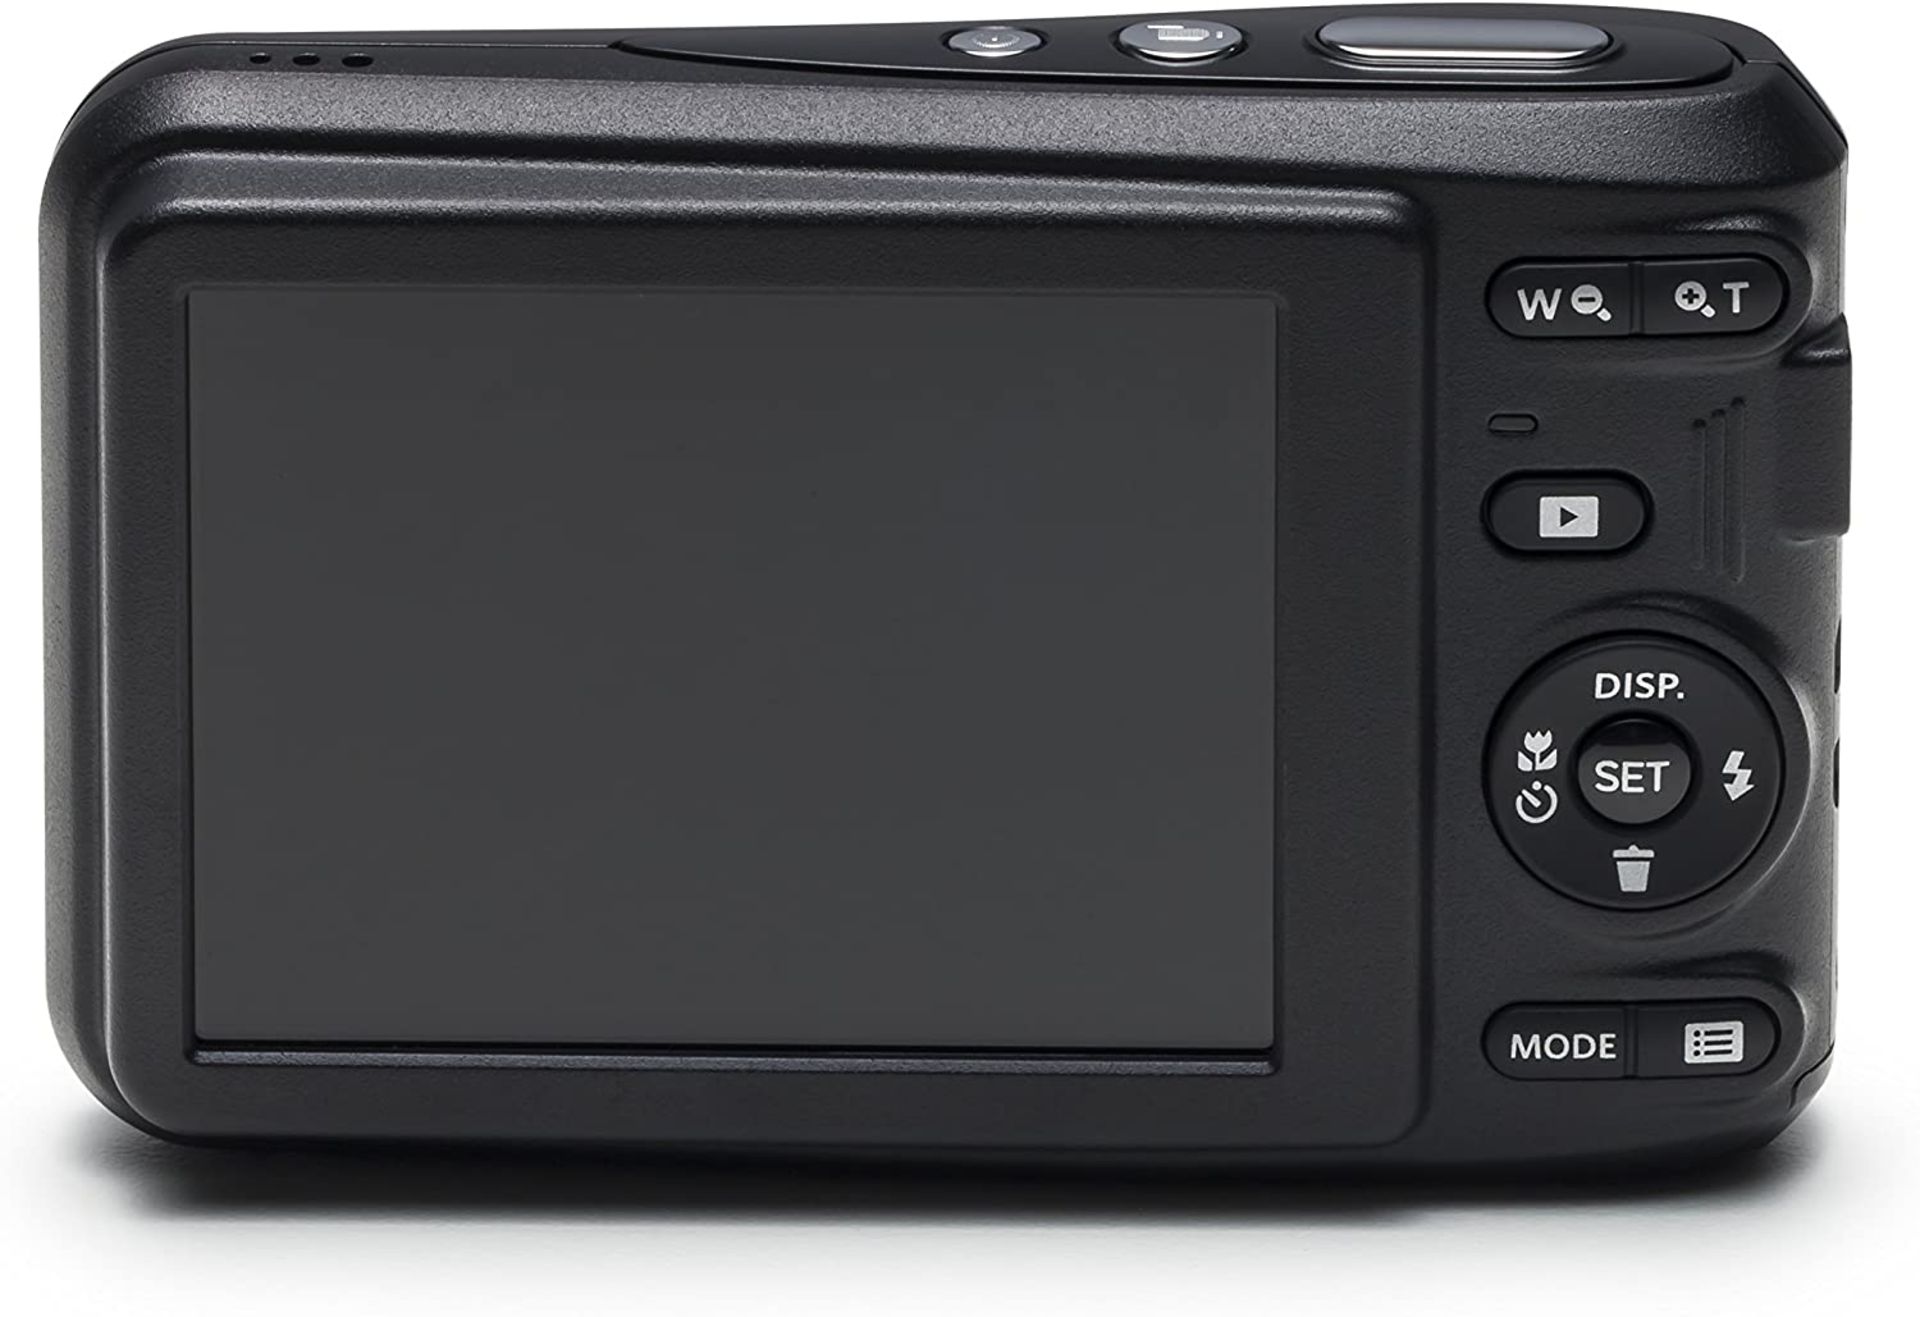 (41) 1 x Grade B - KODAK FZ43 Digital Still Camera - Black (27 mm Lens, 4x Zoom, 16 MP) 2.7-Inc... - Image 2 of 4